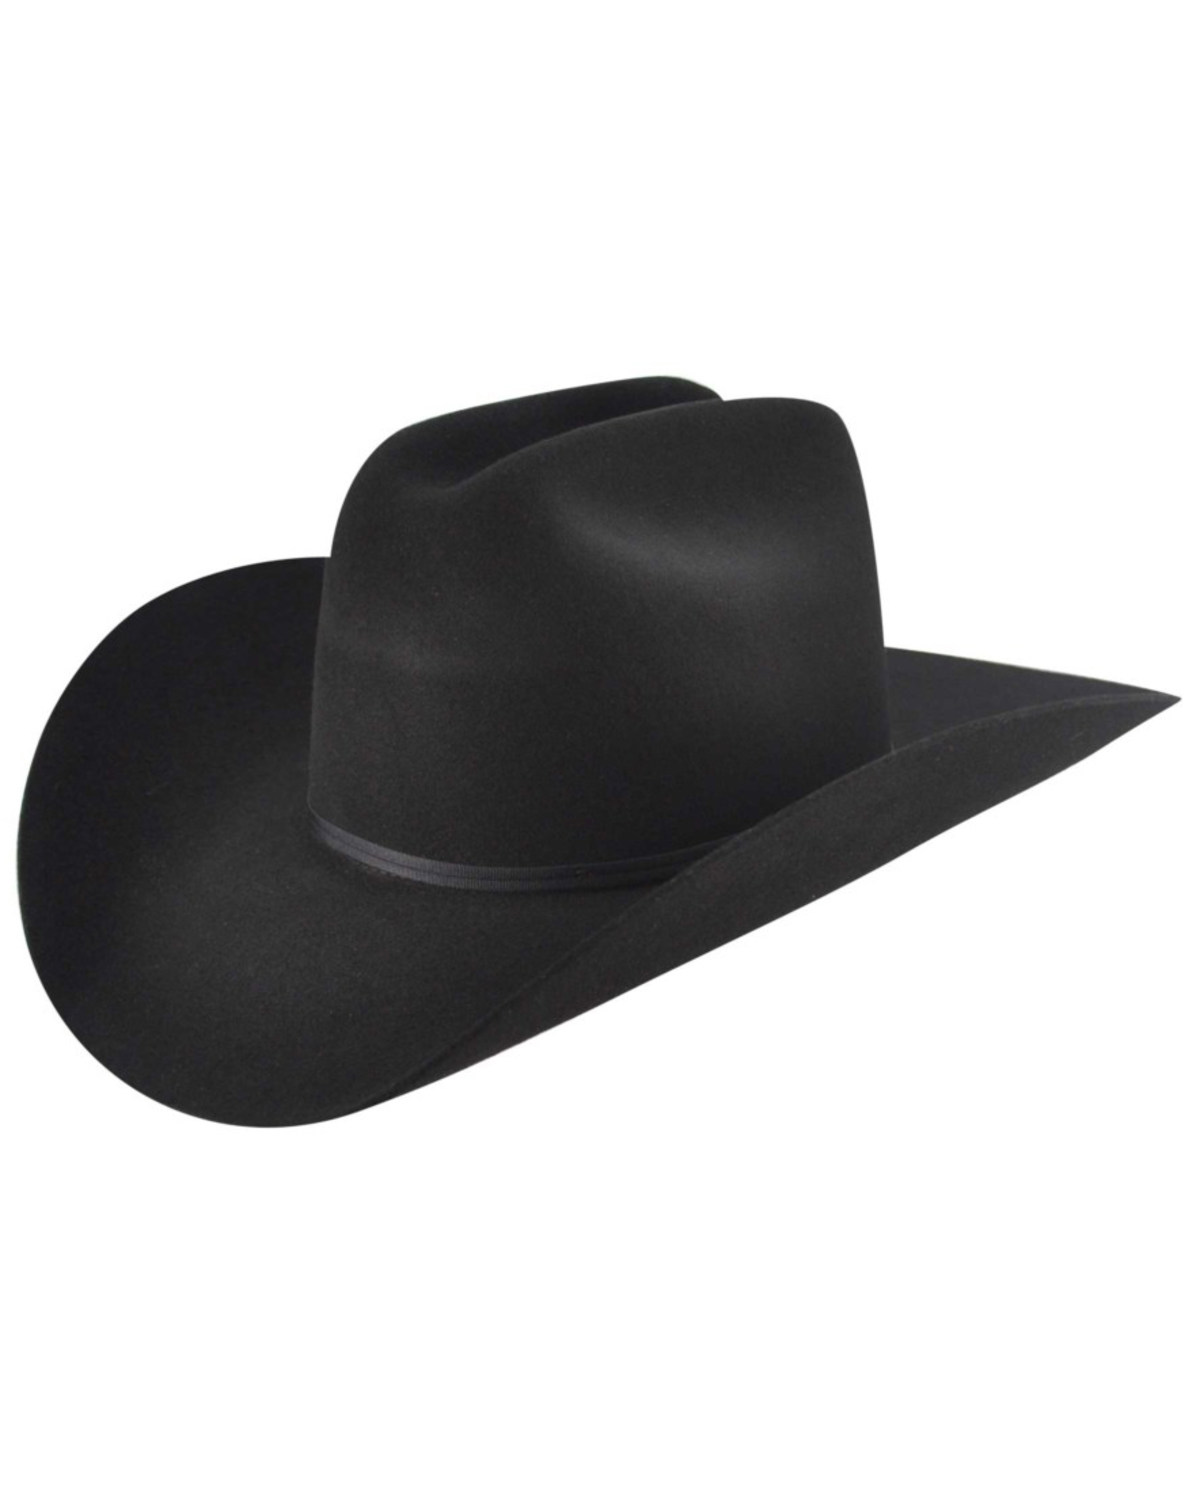 Bailey Western Stampede 2X Felt Cowboy Hat